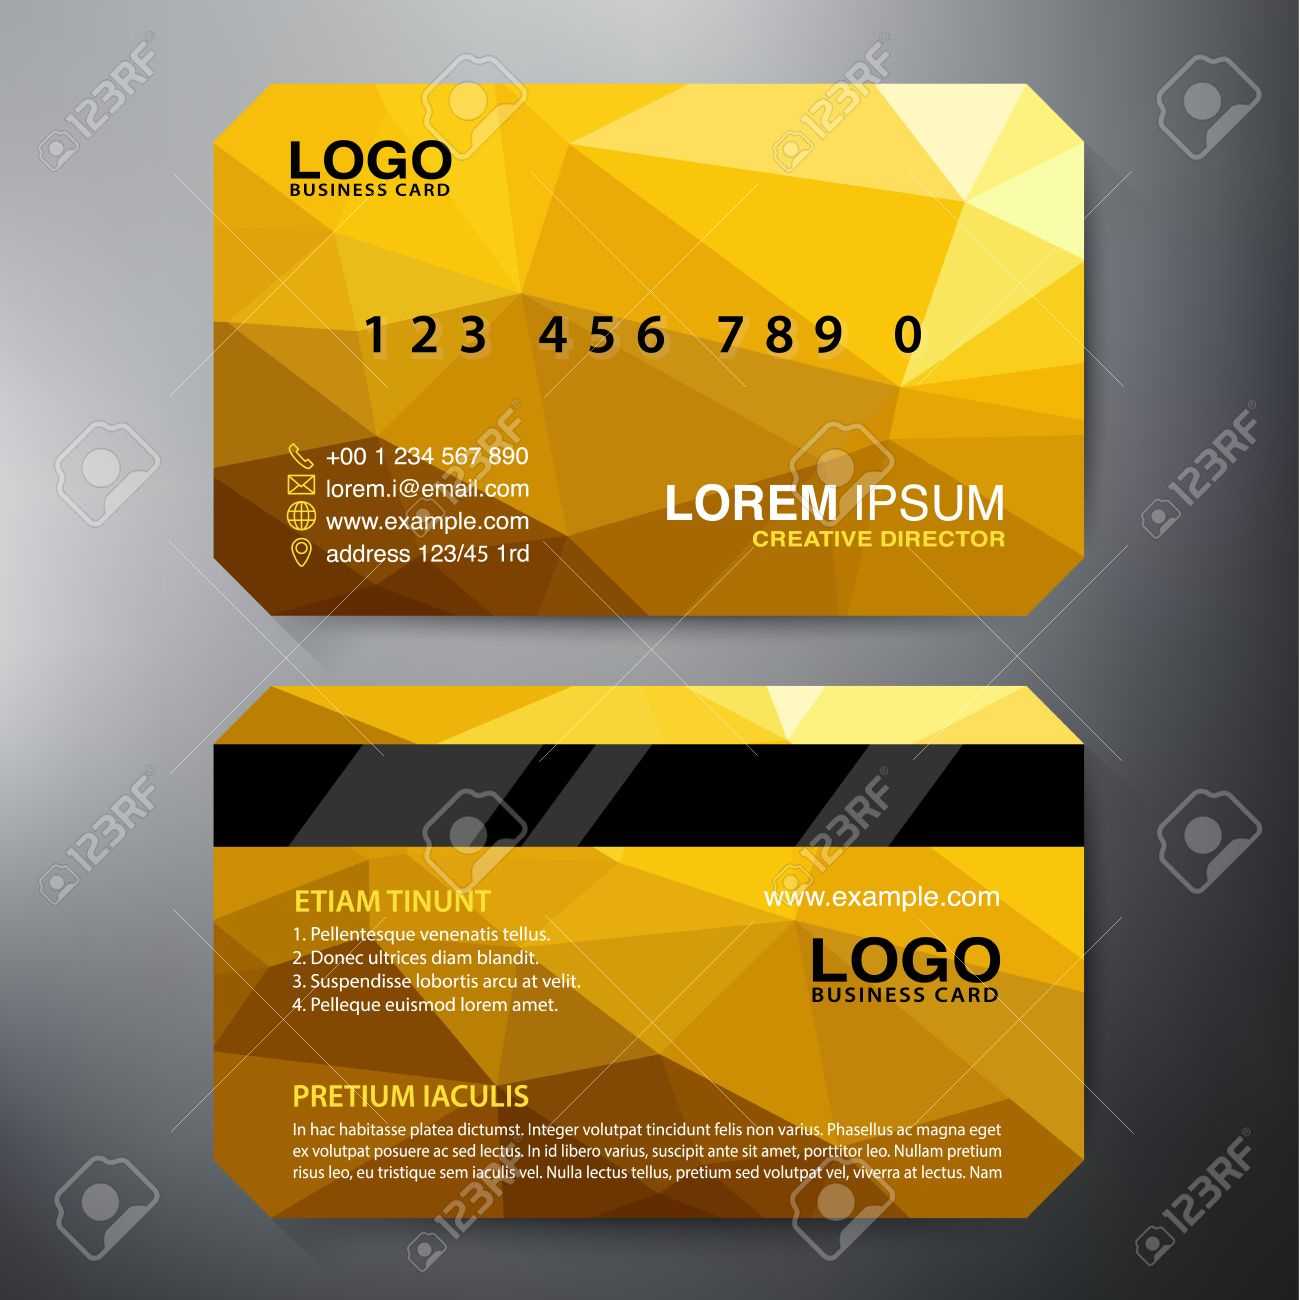 Modern Business Card Design Template. Vector Illustration Regarding Modern Business Card Design Templates